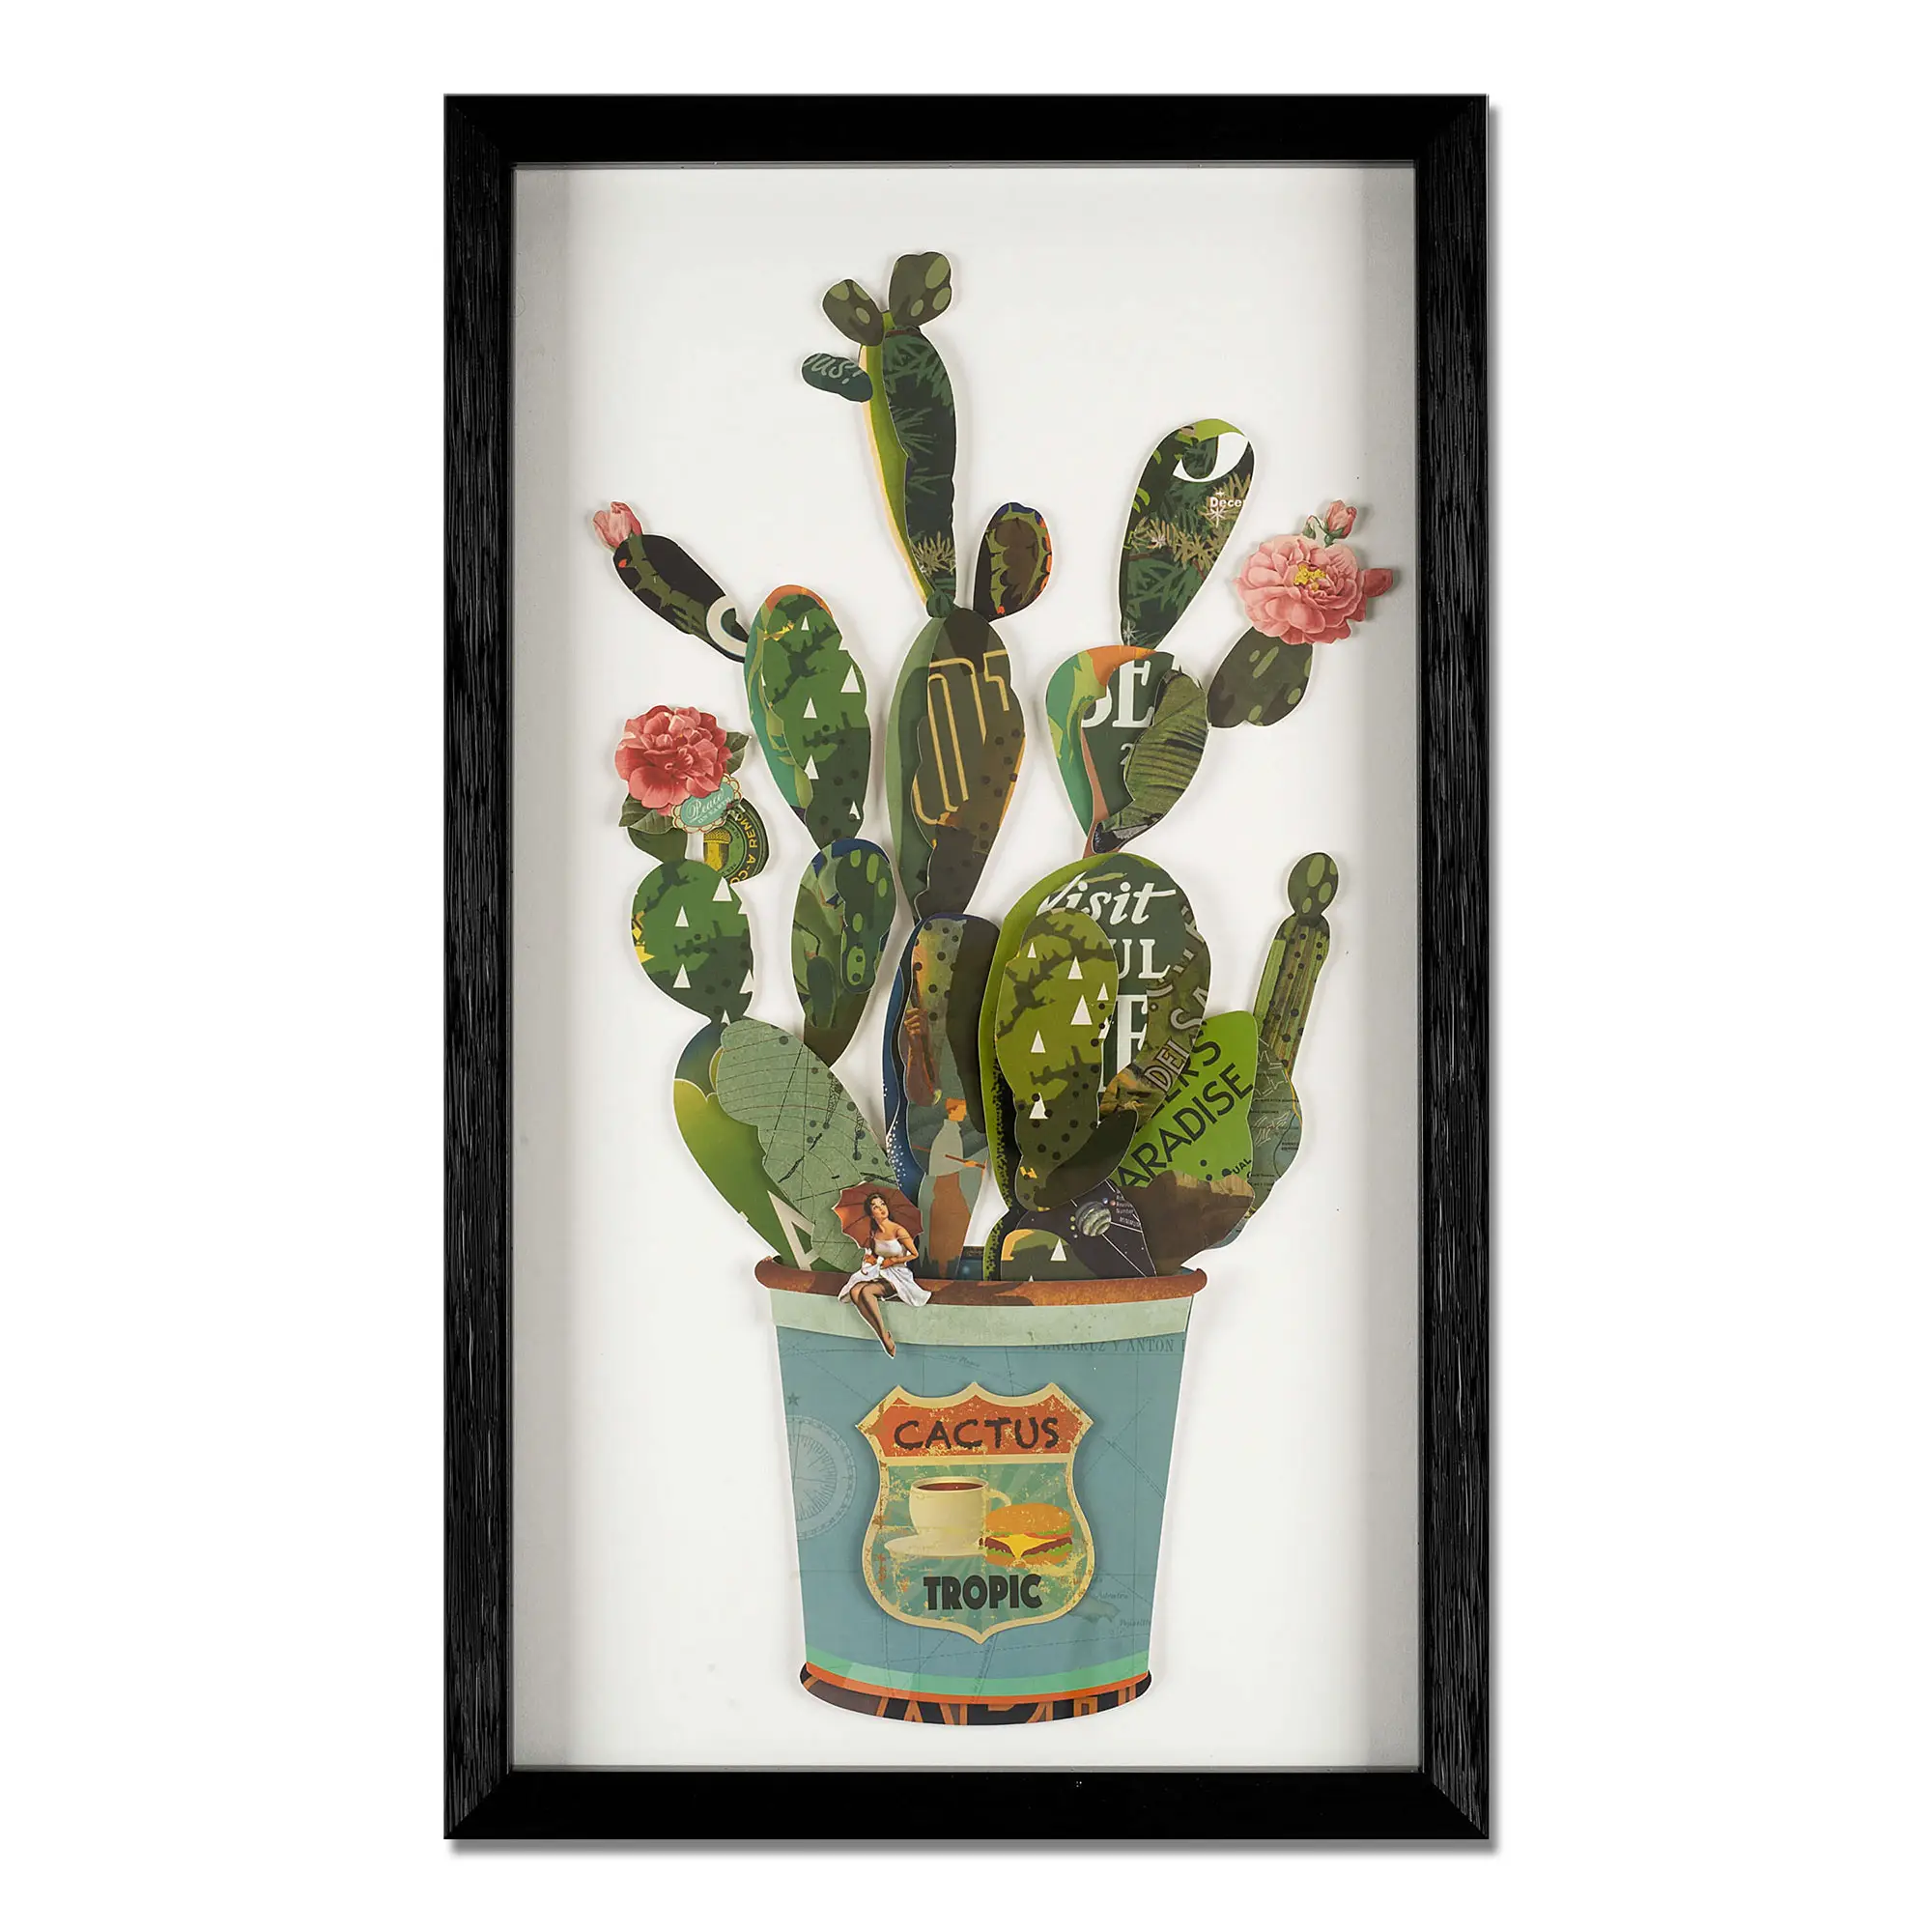 3D-Collage-Bild Kaktus in der Vase